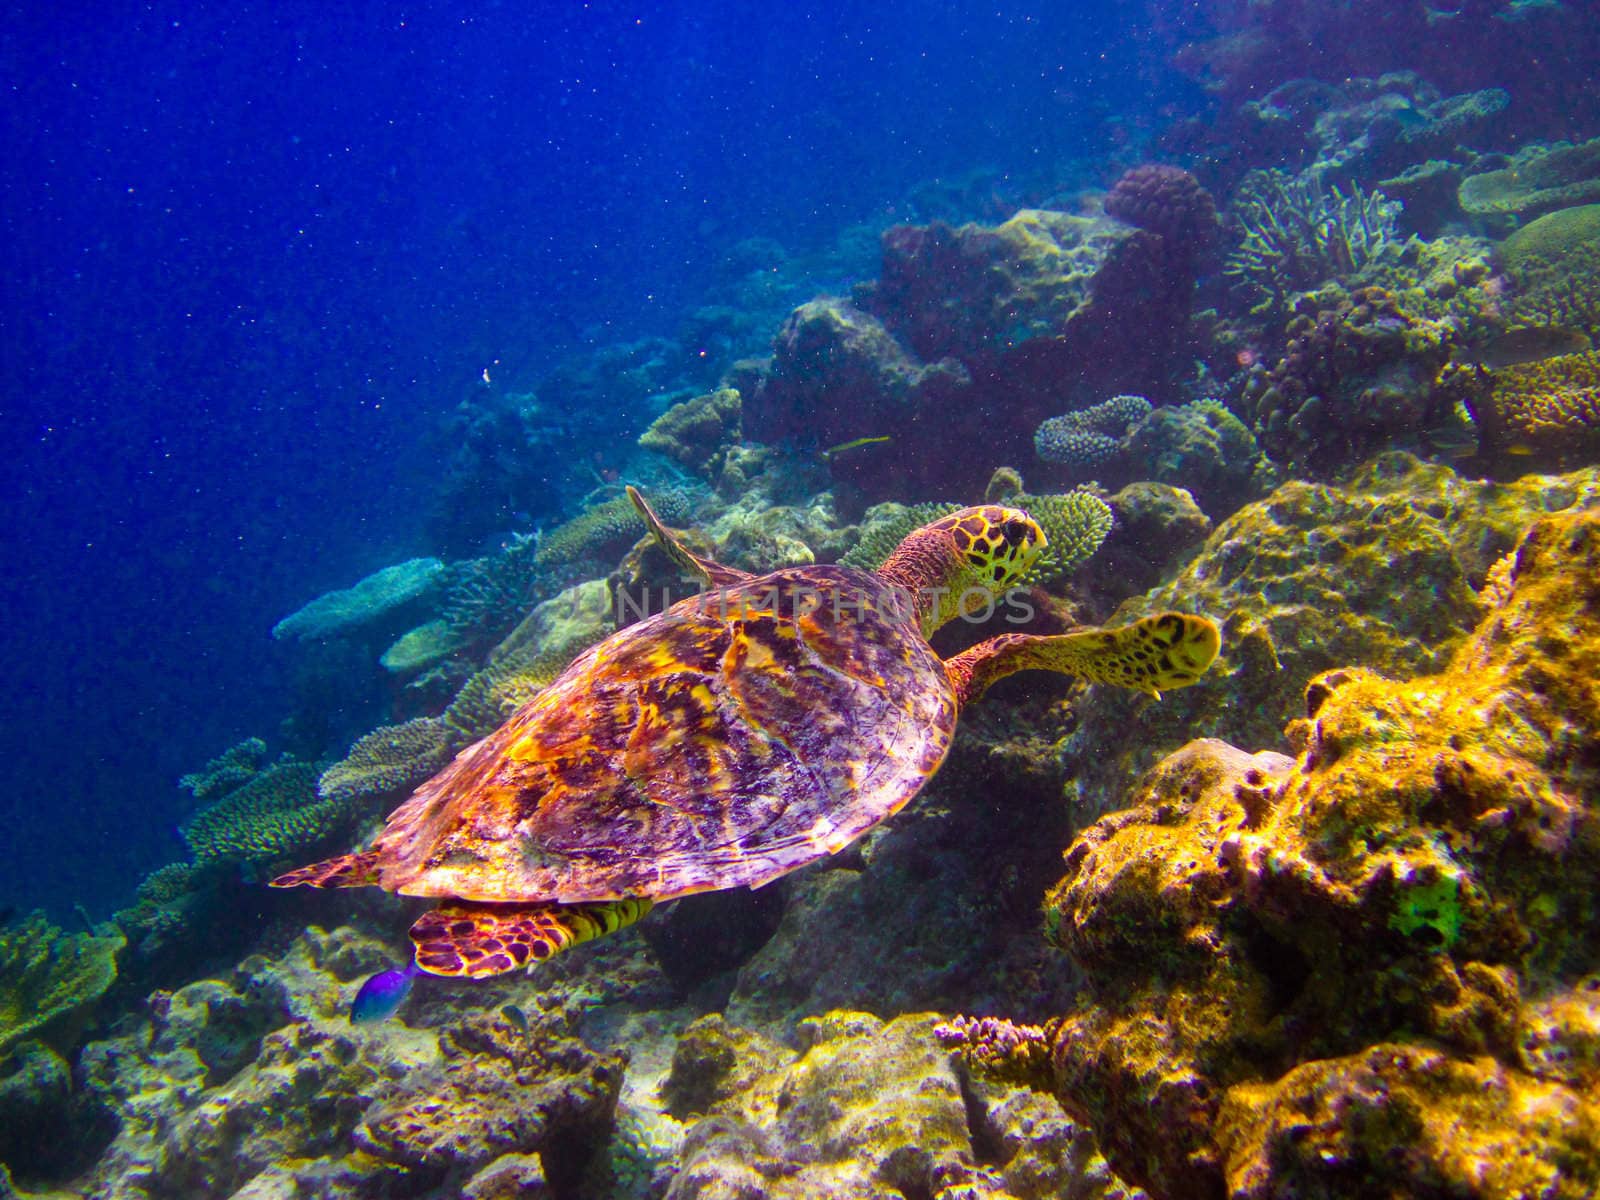 Hawksbill Turtle swiming like flying by anobis